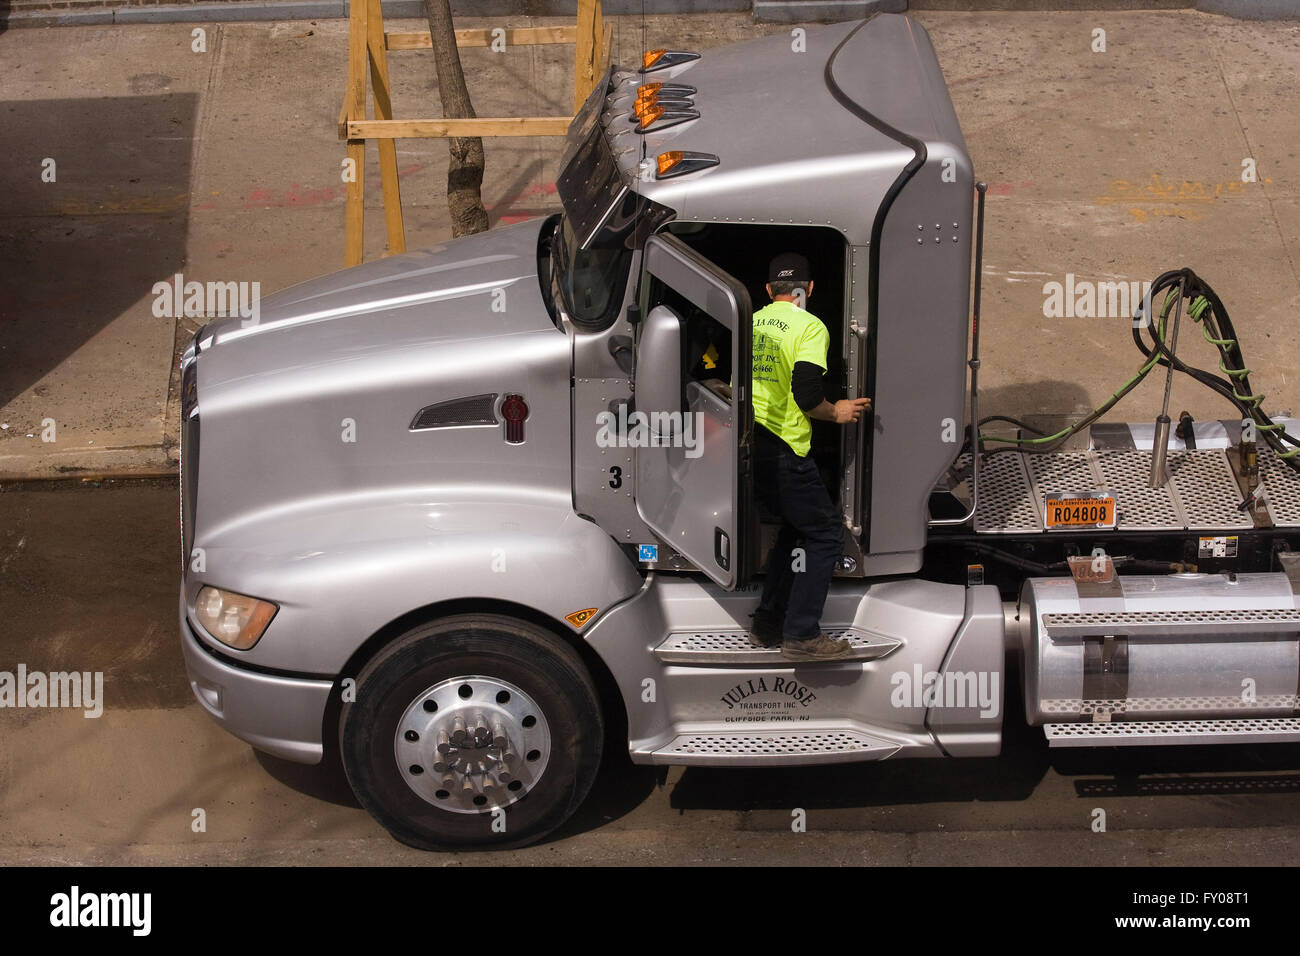 Chauffeur de camion de l'opérateur propriétaire debout à la porte ouverte d'un gros camion Kenworth semi-remorques stationnés sur une rue de la ville Banque D'Images